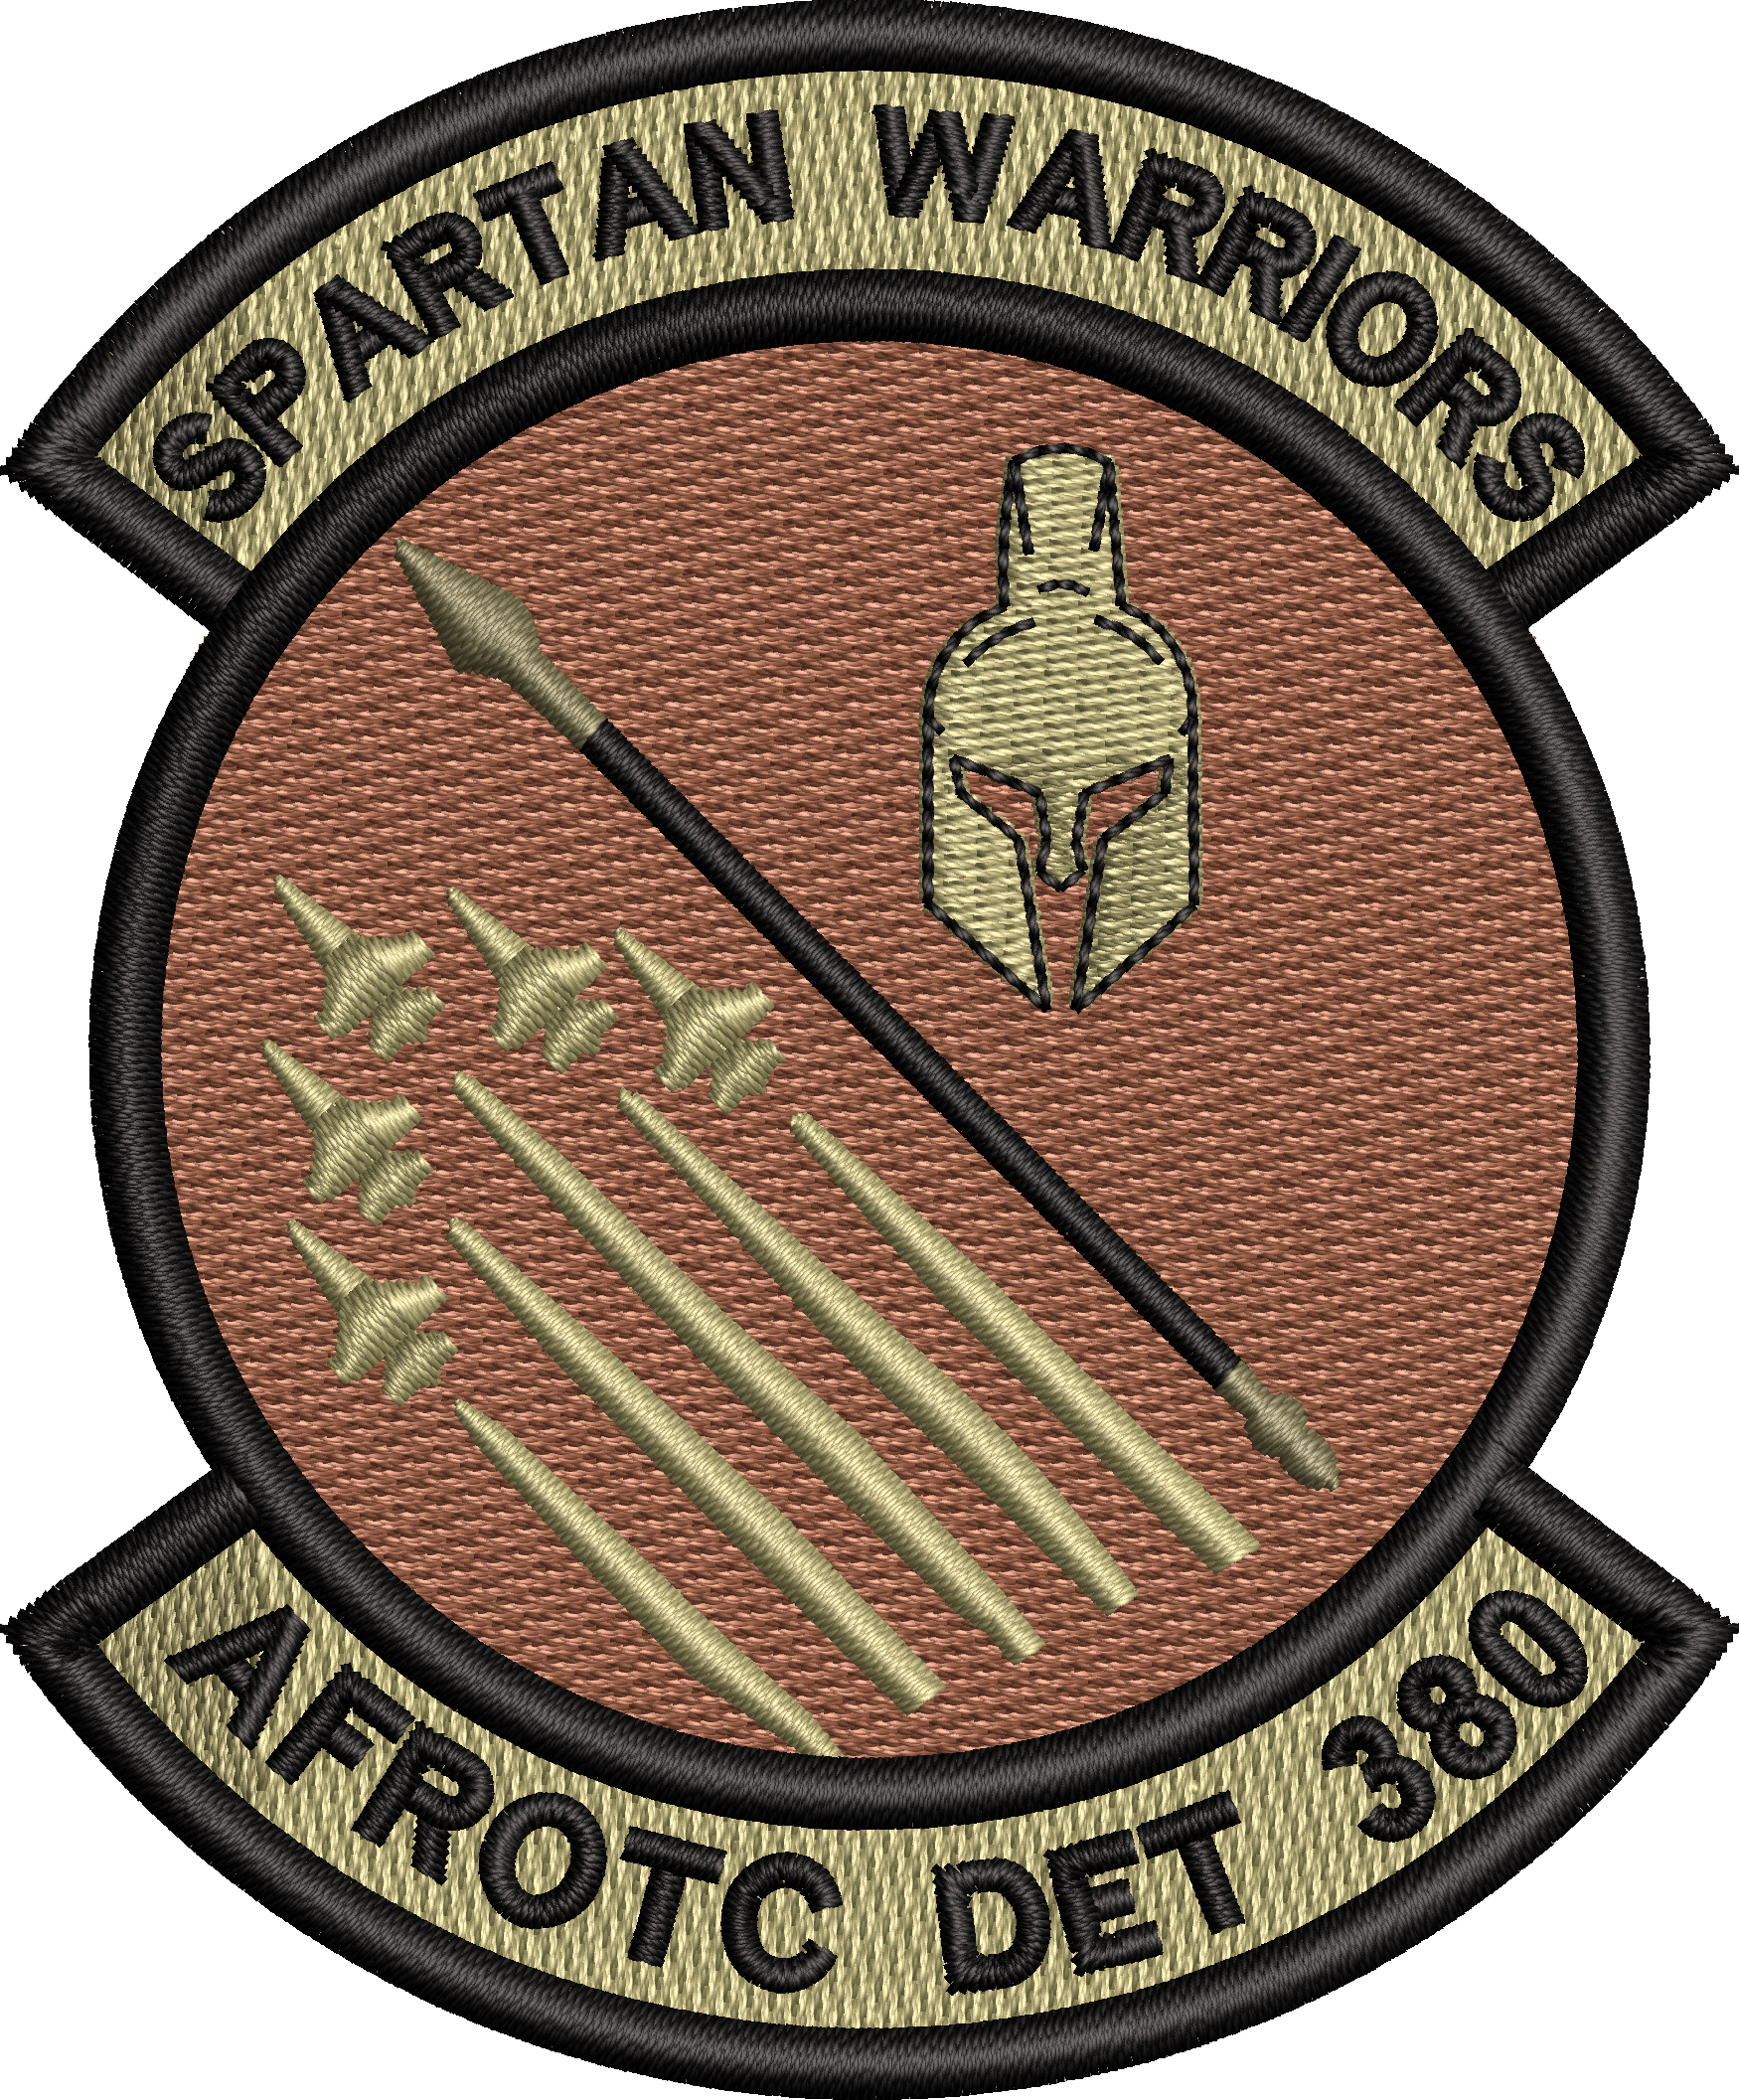 AFROTC DET 380 SPARTAN WARRIORS - OCP